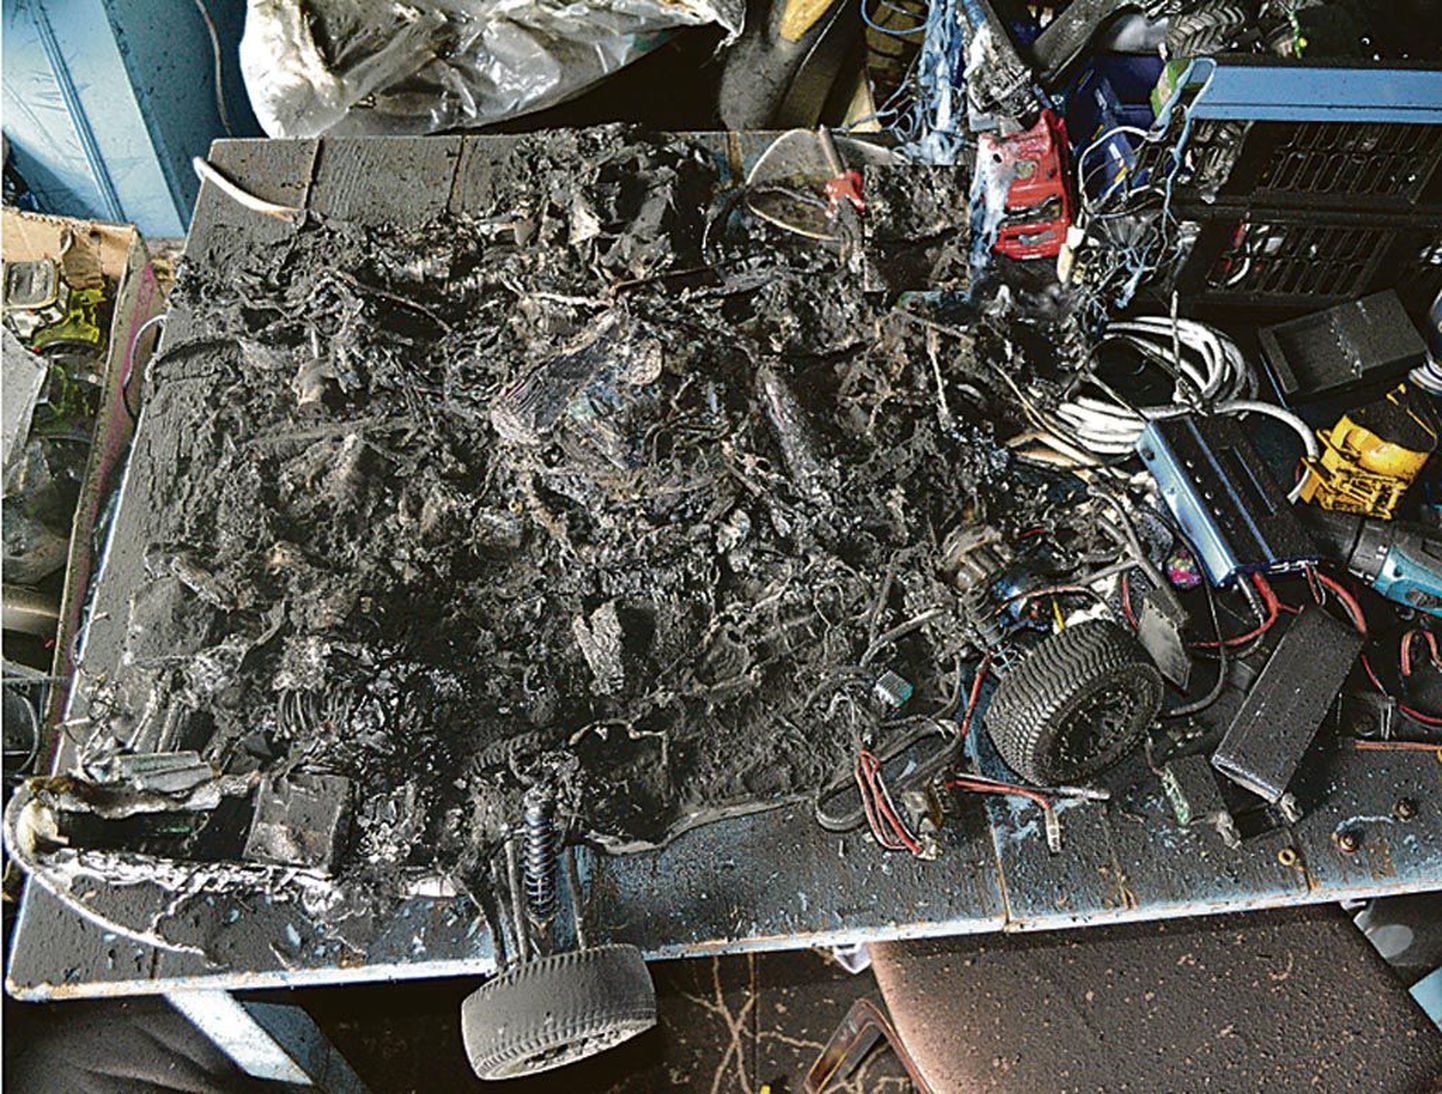 Mängumasinad ei olnud laadimas, vaid seisid laual. Seetõttu pole selge, mis võis põlengu põhjustada.